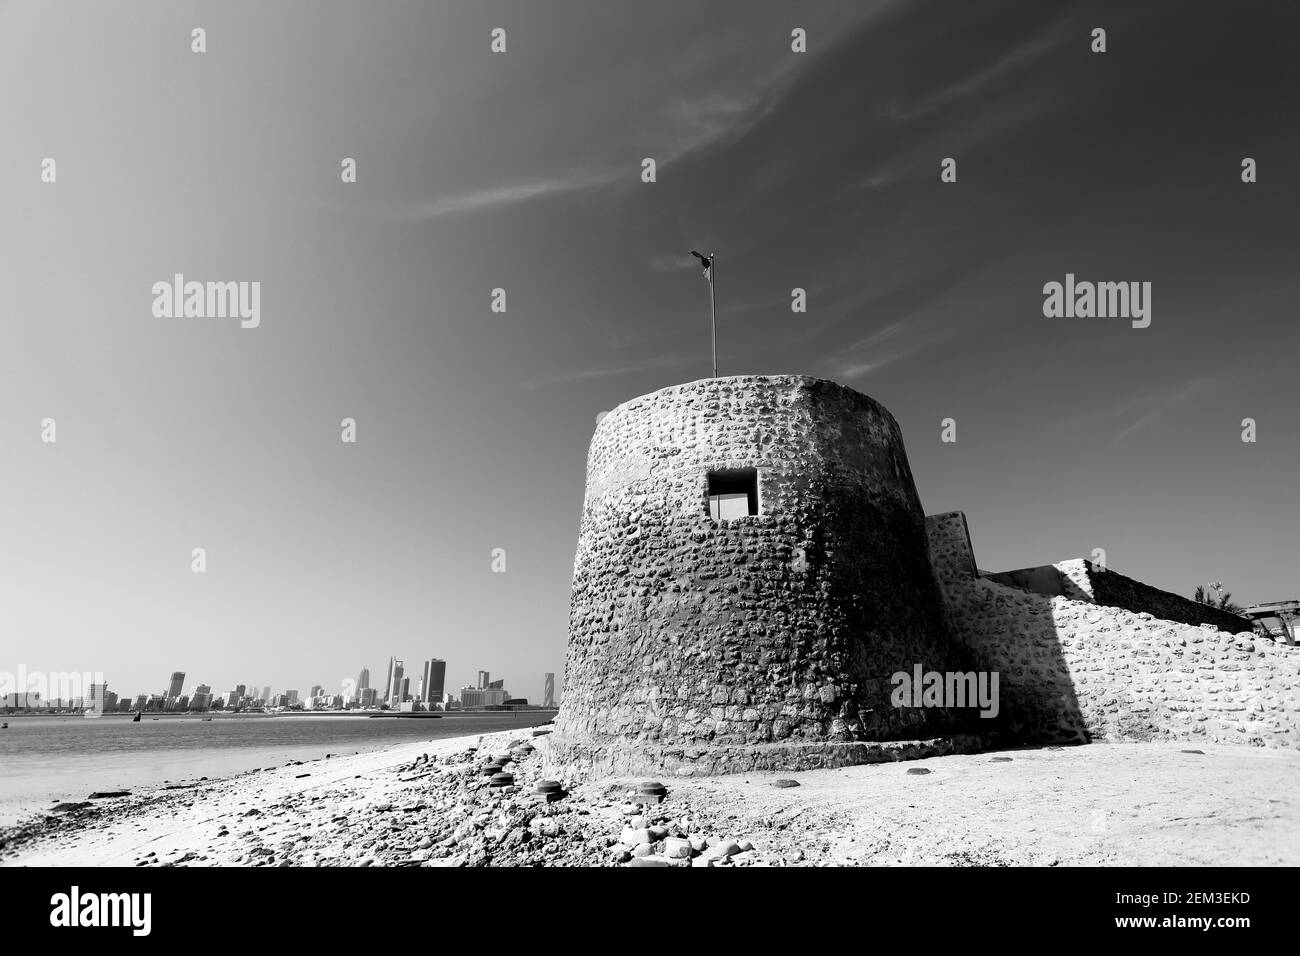 Monochrome, noir et blanc, image du fort de la BU Maher, début de la piste des perles de Bahreïn, Manama en arrière-plan, Muharraq, Royaume de Bahreïn Banque D'Images